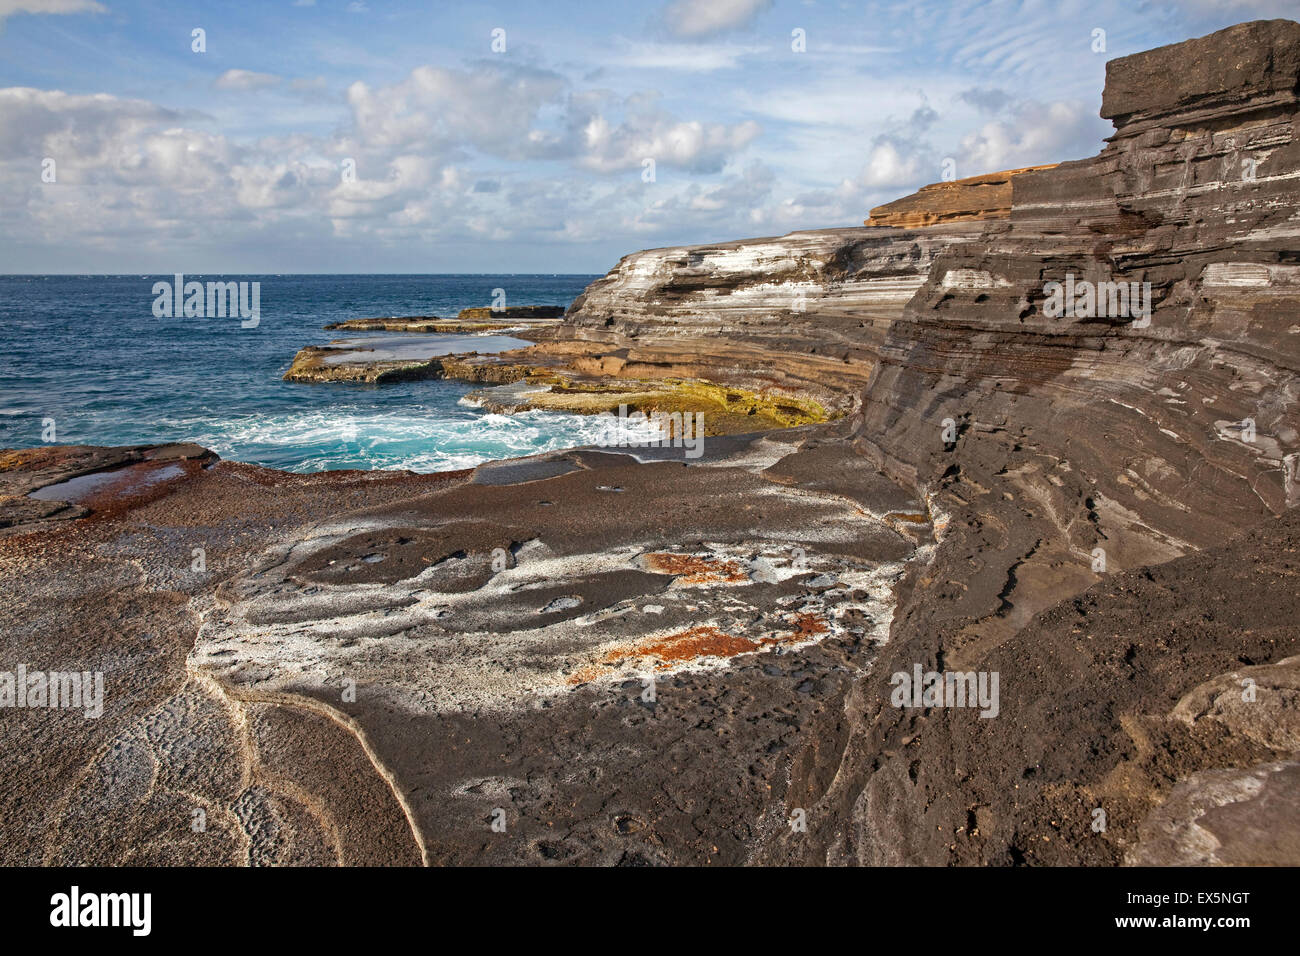 Erodierte Sandstein Felsformationen bedeckt mit Algen an der kargen felsigen Küste auf der Insel, São Nicolau, Kap Verde, Afrika Stockfoto